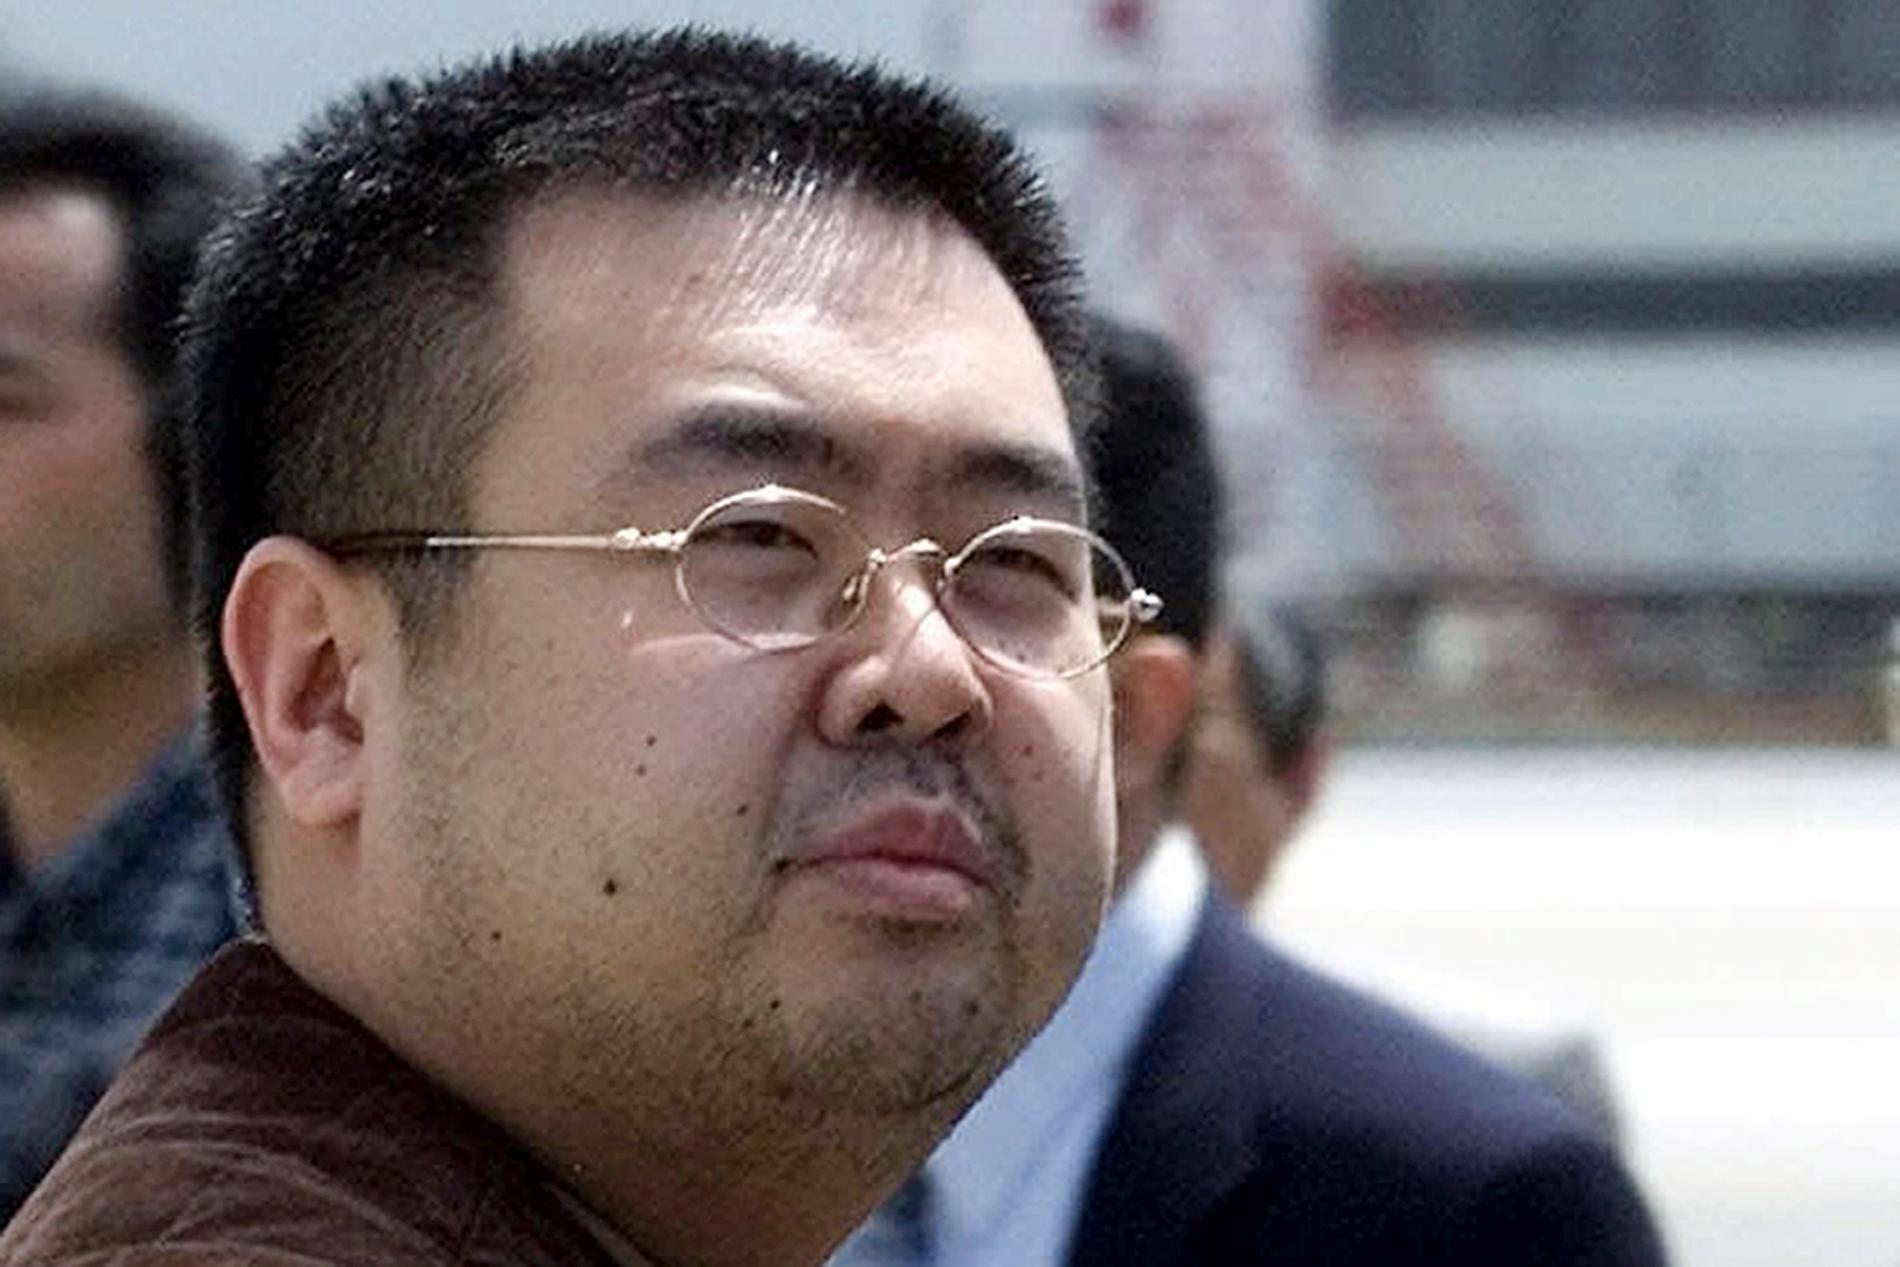 Mordet på Nordkoreas diktator Kim Jong-Uns halvbror Kim Jong-Nam har utlöst en diplomatisk kris.